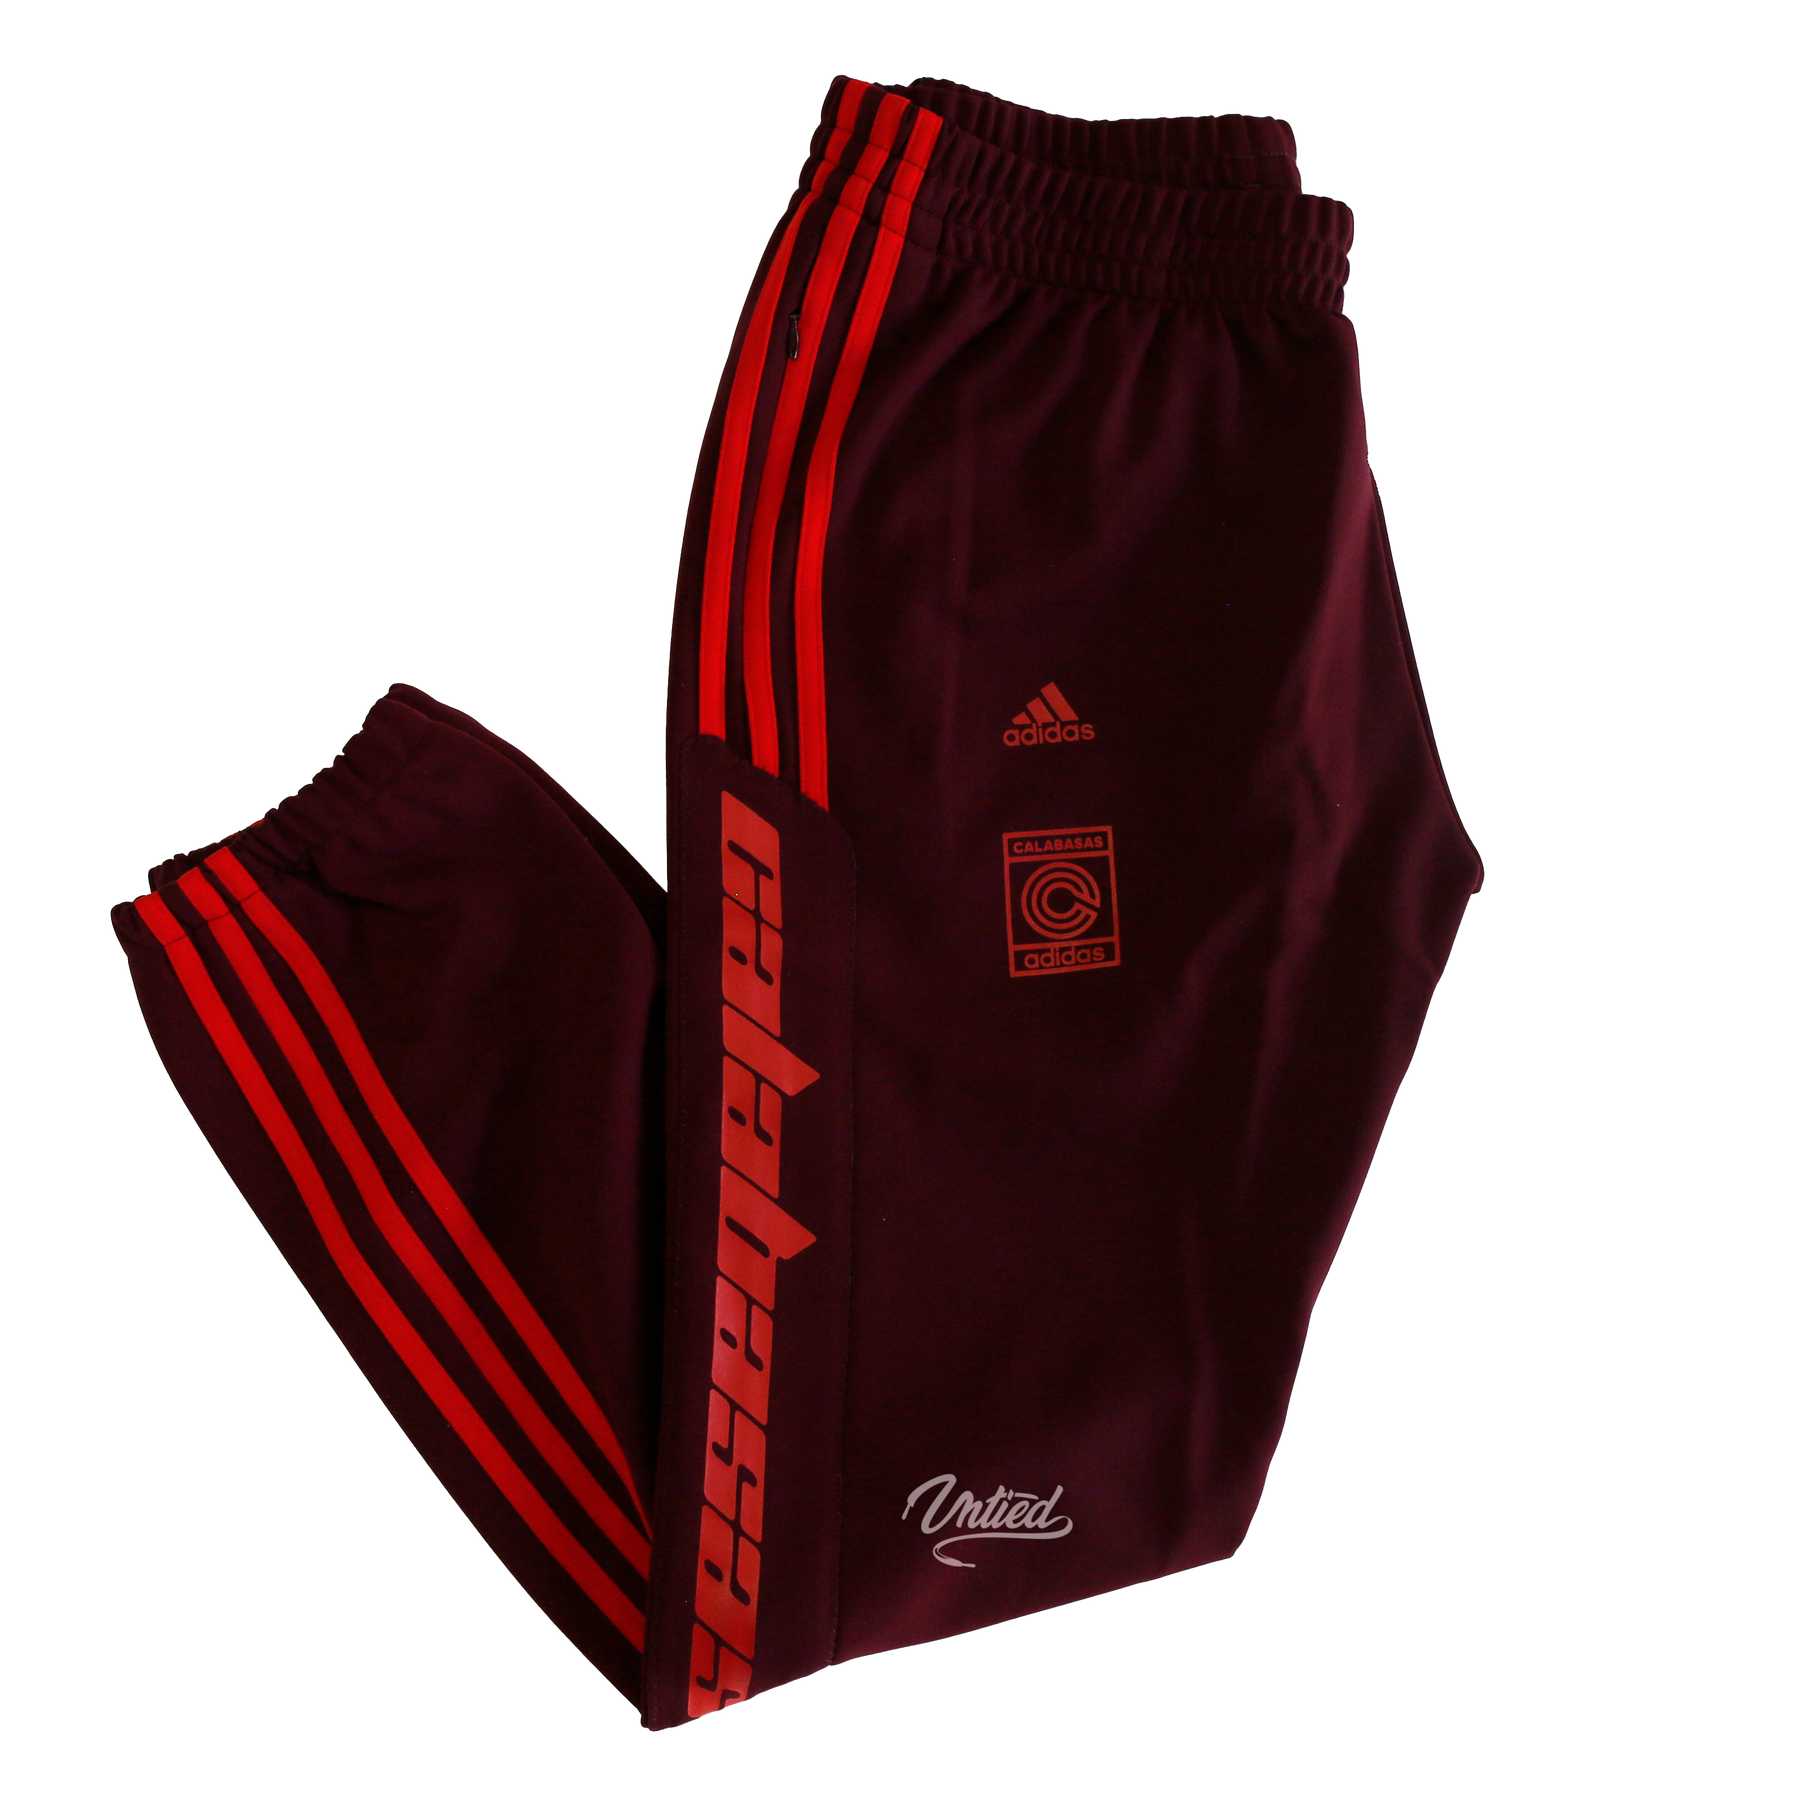 Adidas Yeezy Calabasas Track Pants 